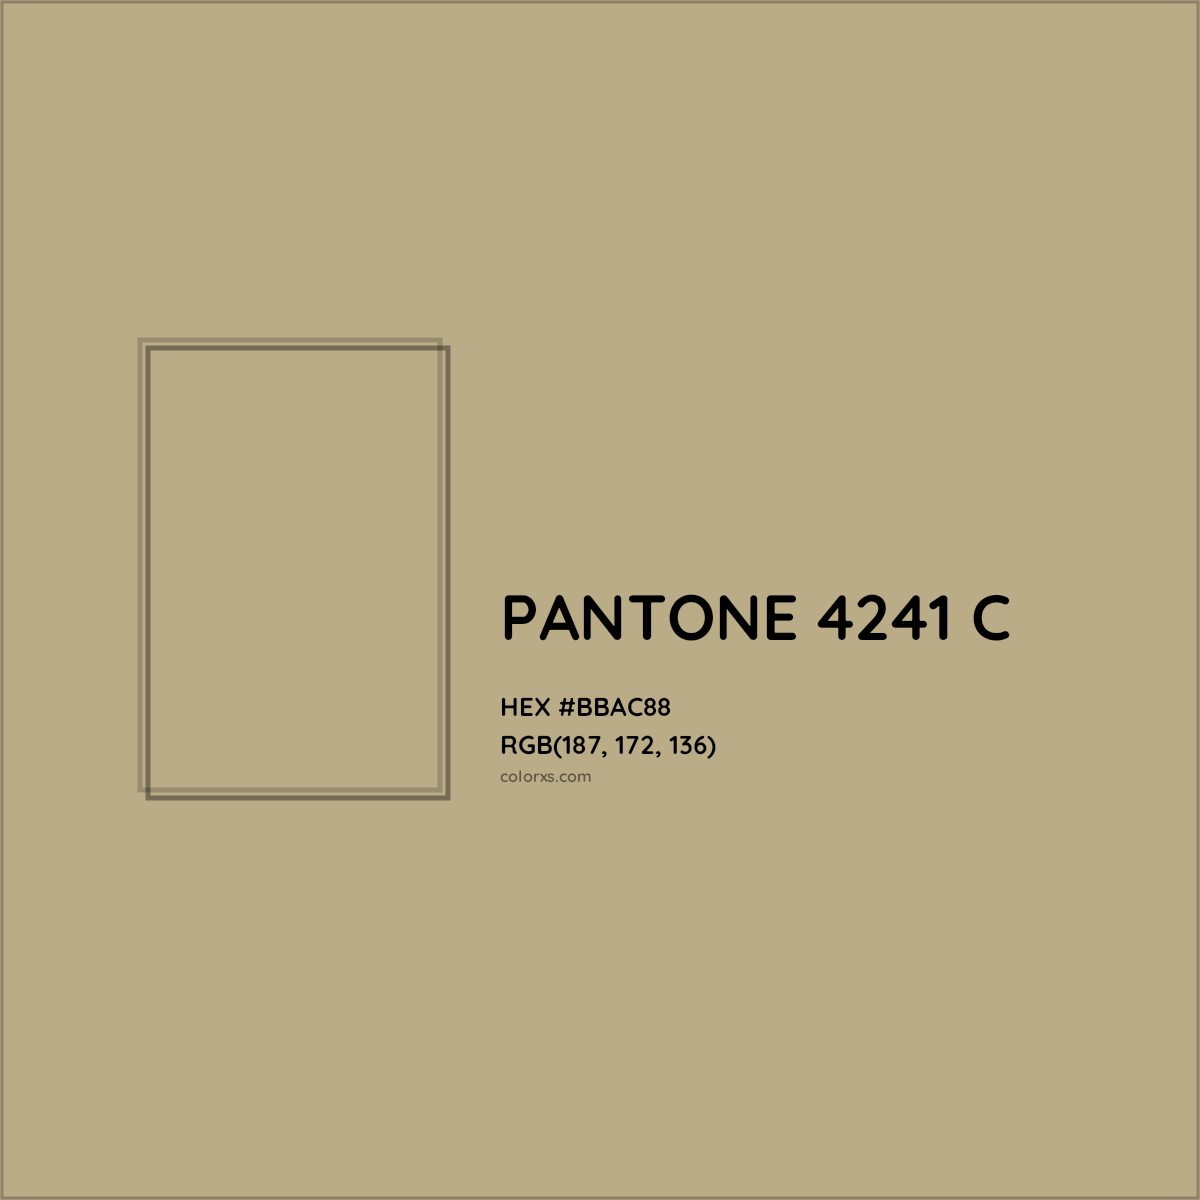 HEX #BBAC88 PANTONE 4241 C CMS Pantone PMS - Color Code